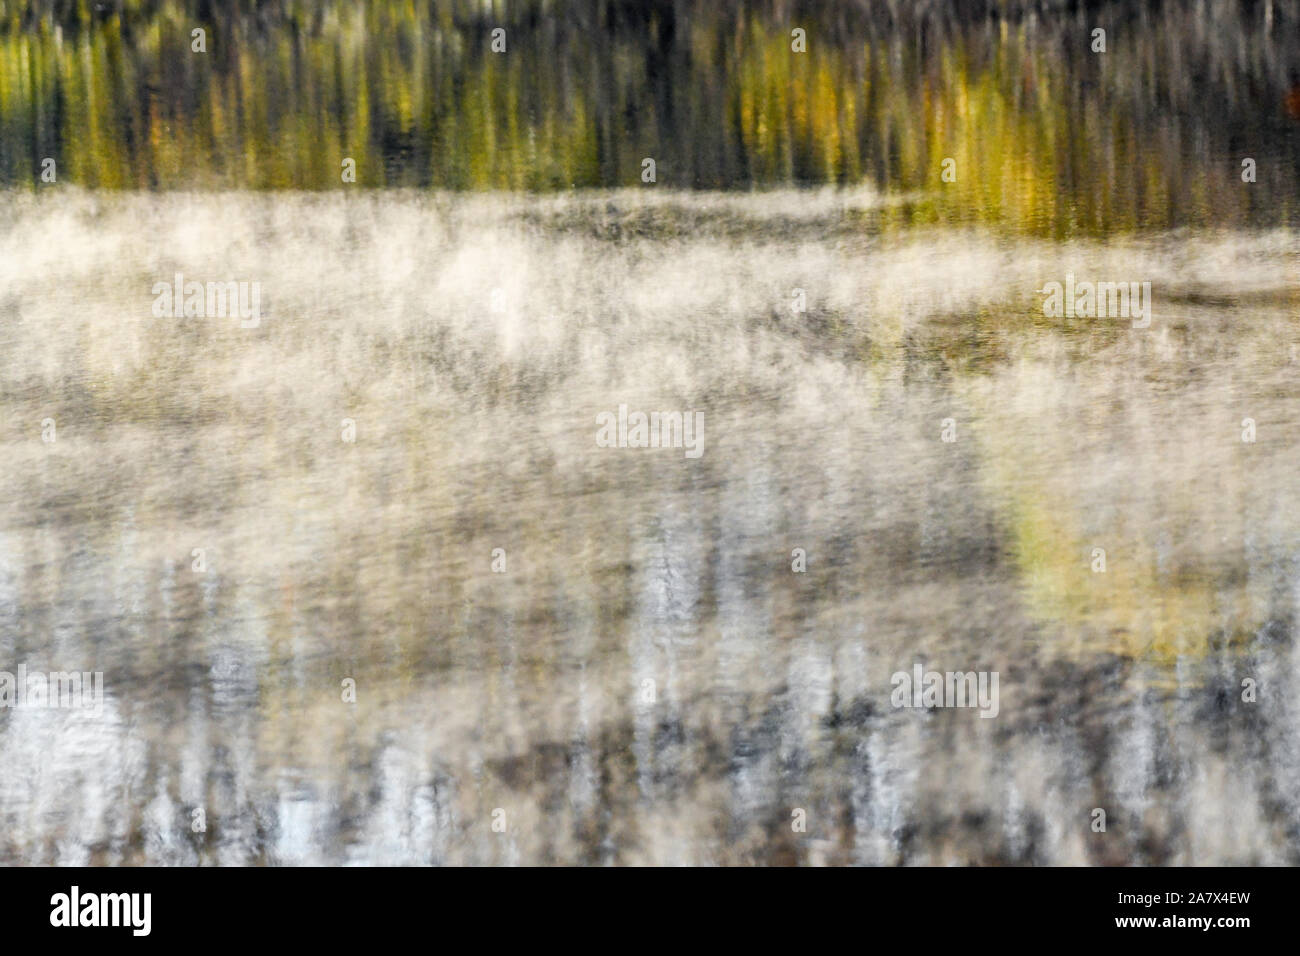 Herbstlaub im Wasser spiegelt - Herbstfarben - fallen Bäume sich - impressionismus - impressionistischen Fotografie - Dampf Nebel - misty Wasser Stockfoto